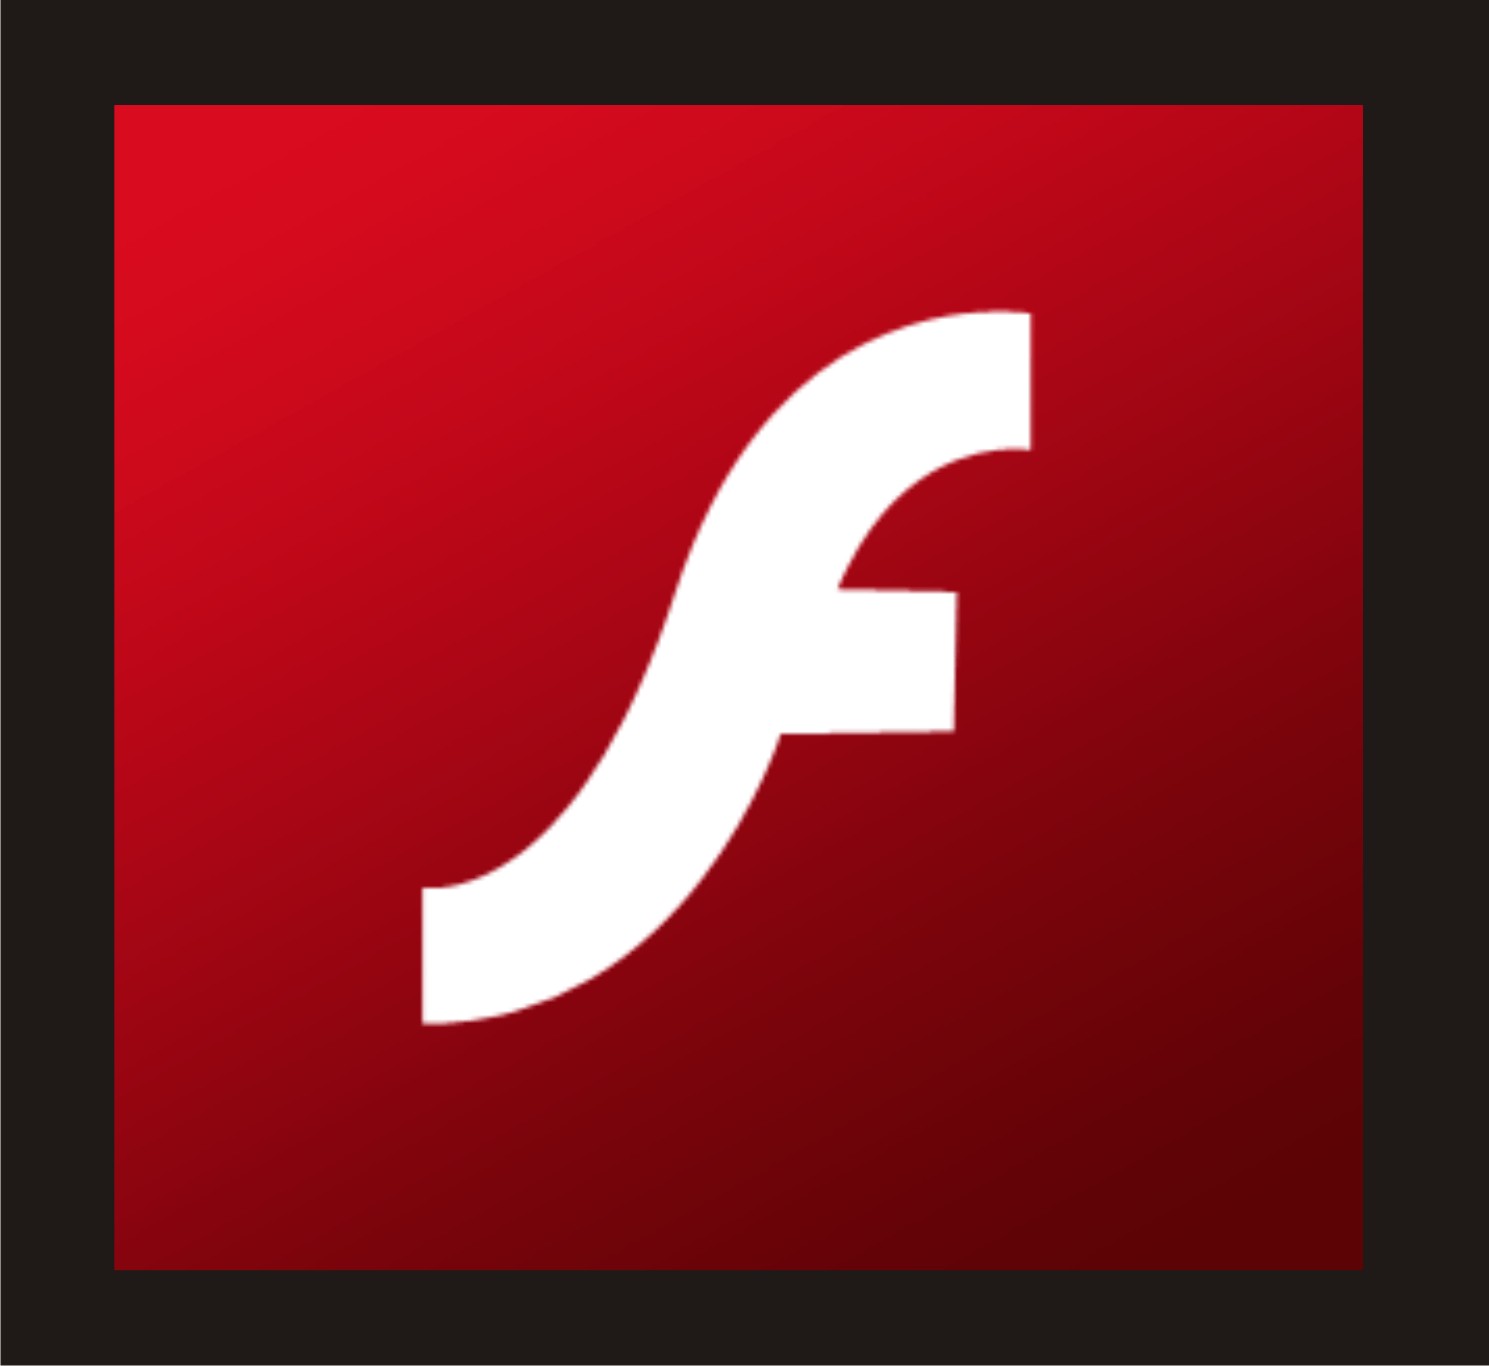 macromedia flash player 8 download